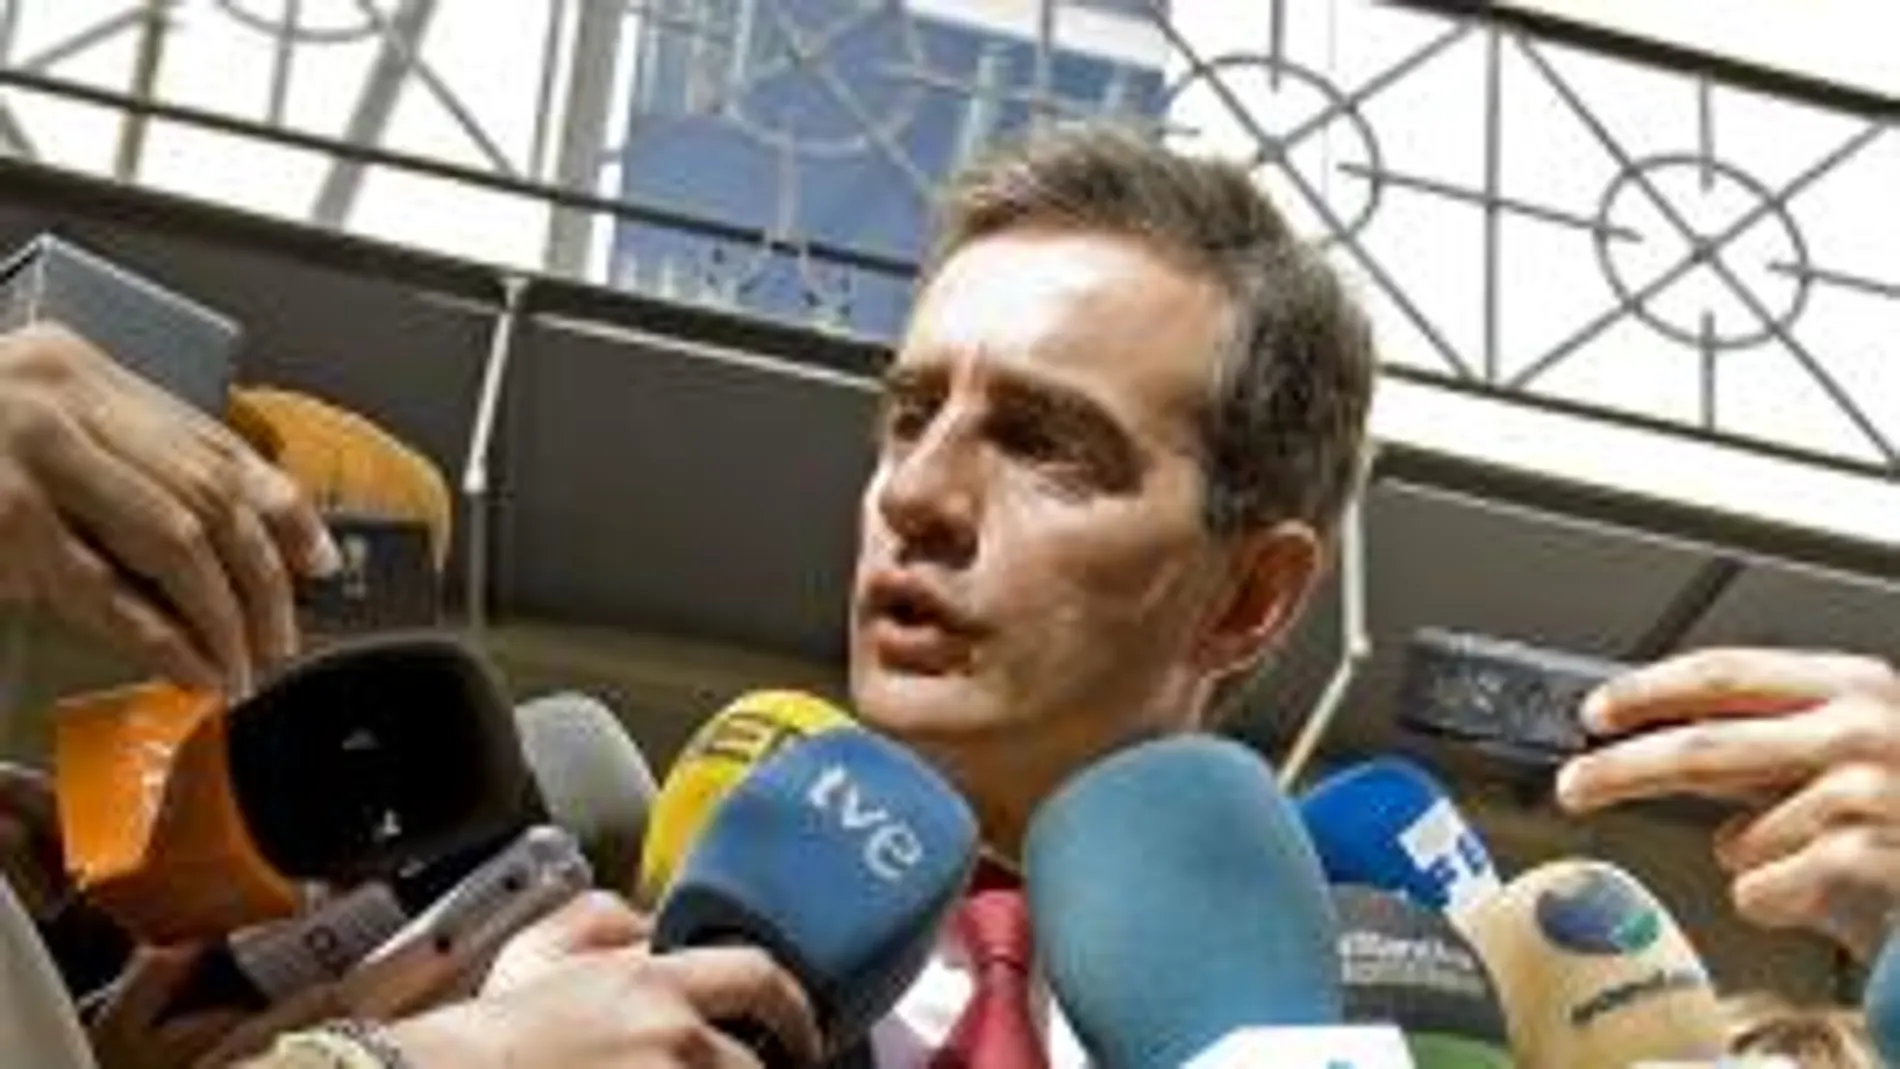 Costa ignoró su suspensión como secretario general de los populares valencianos